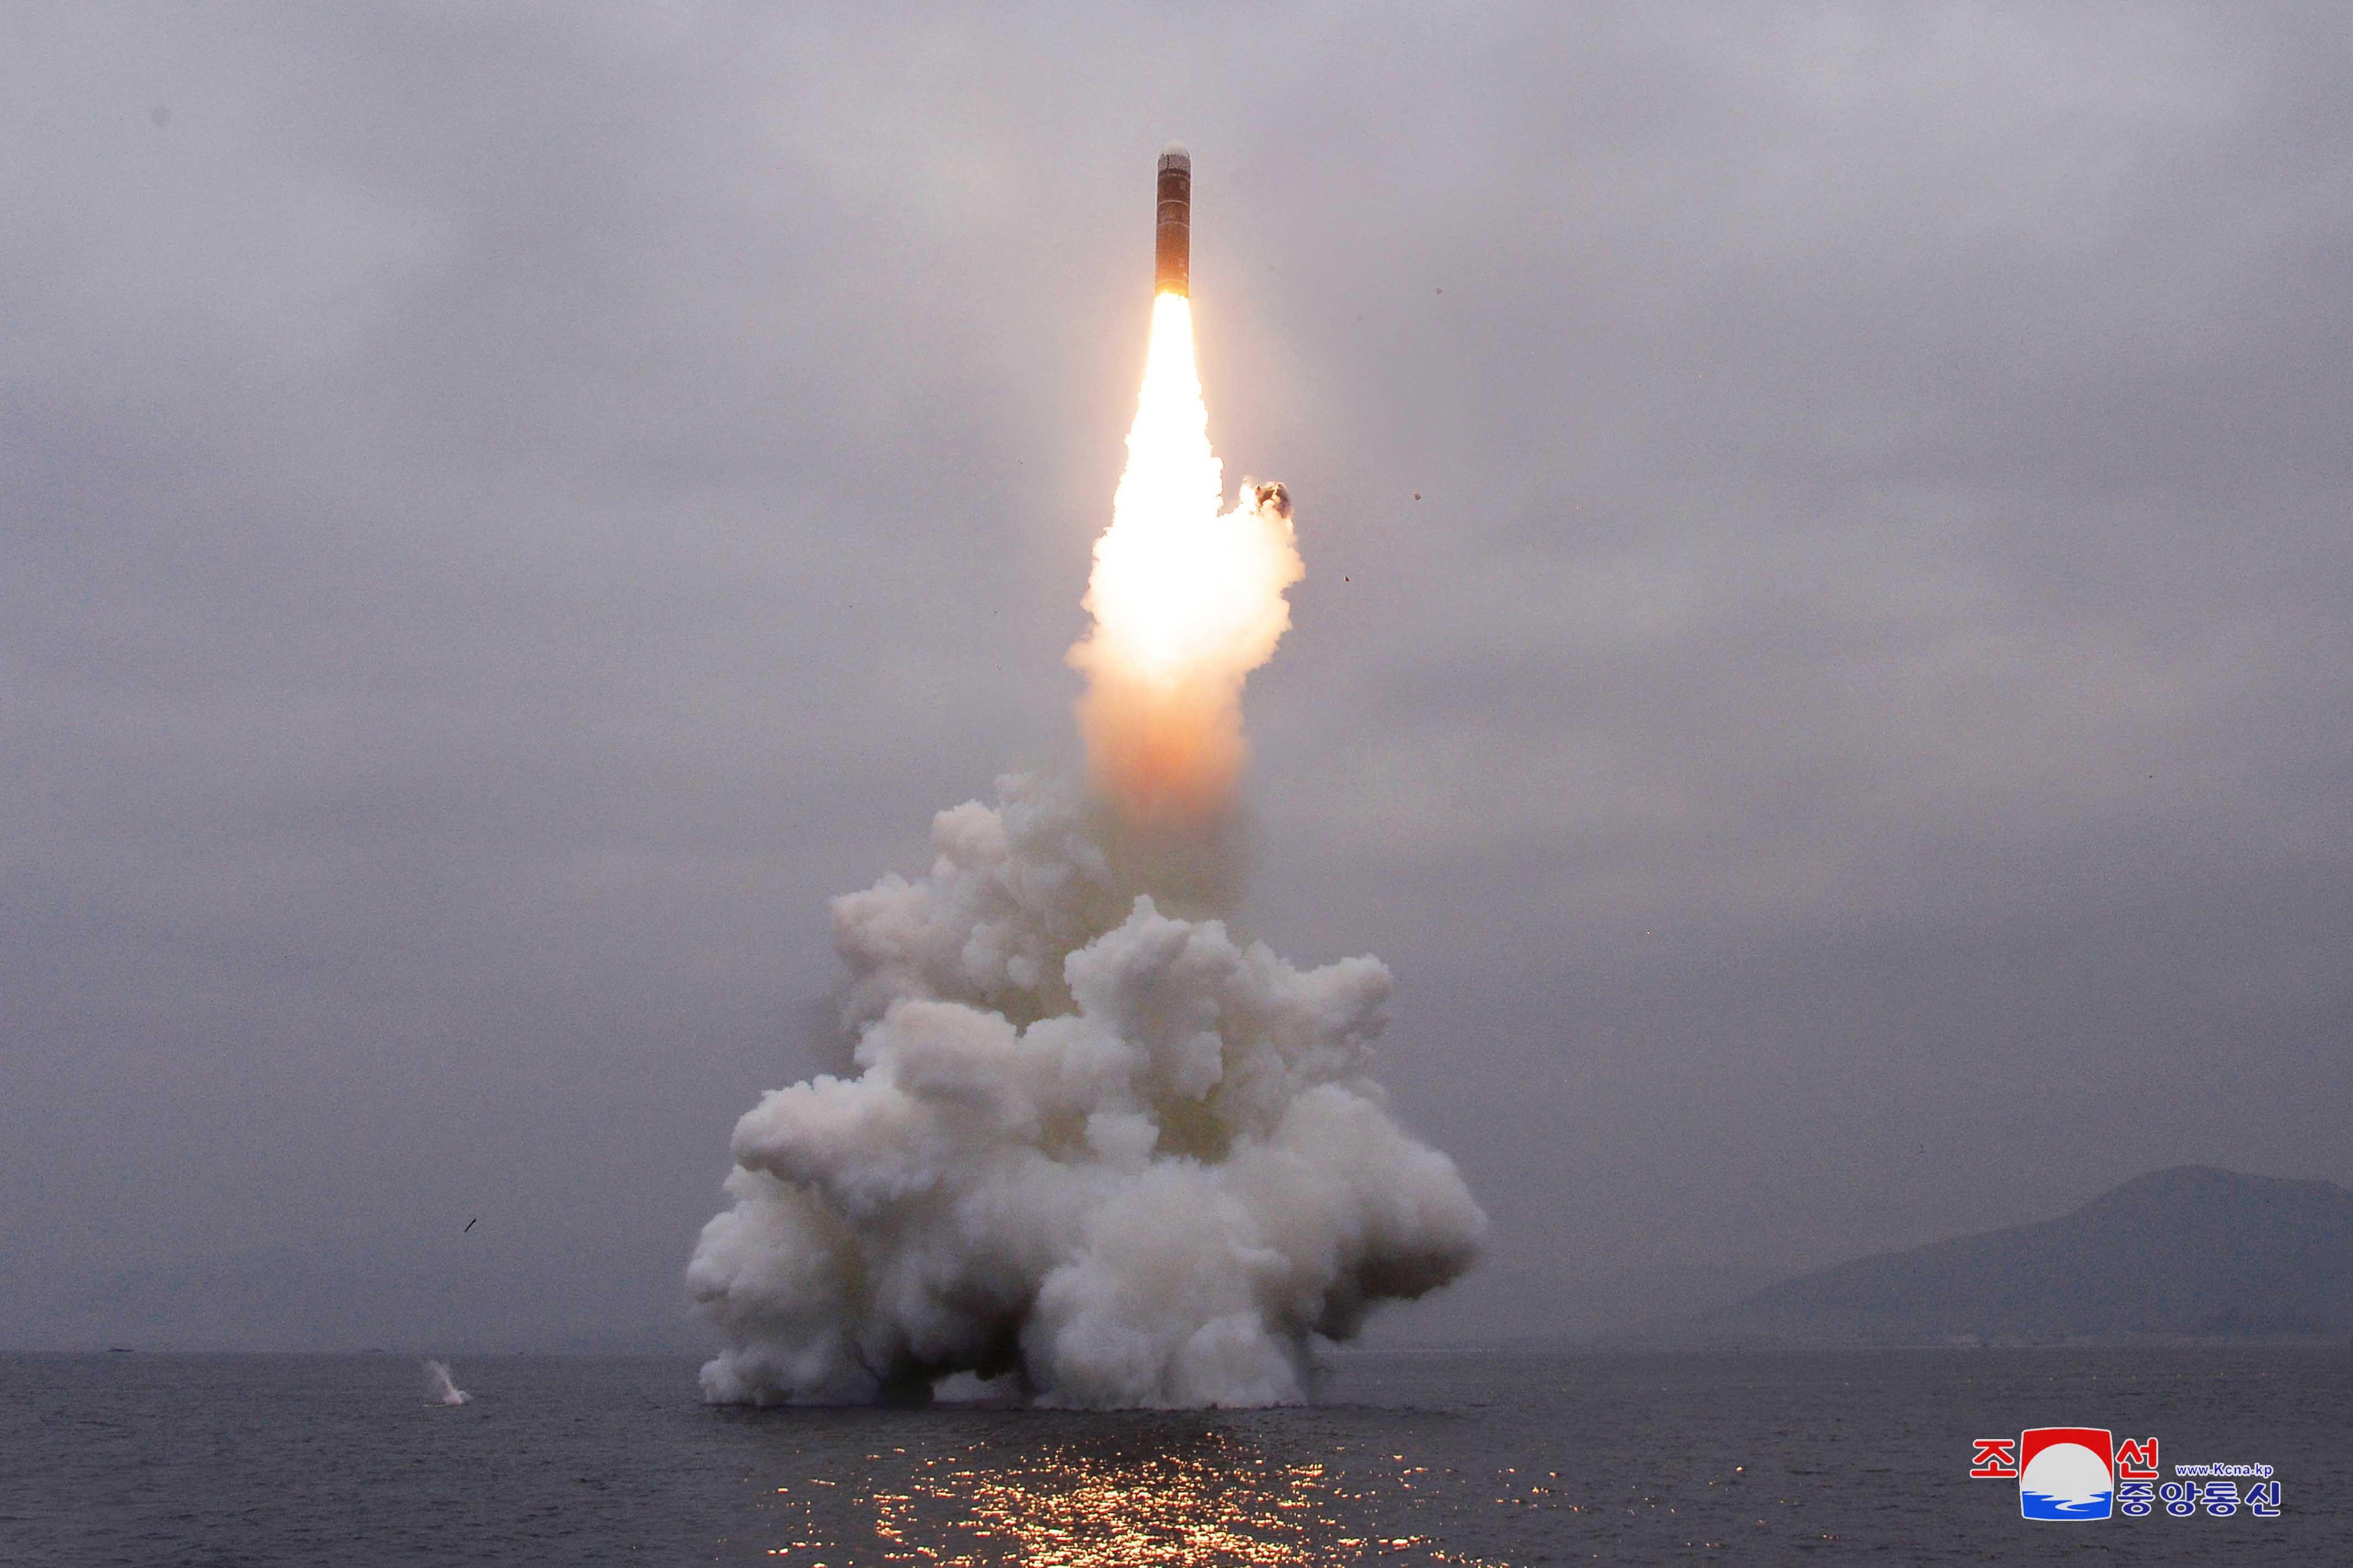 Norcorea, Seul: Pyongyang ha lanciato un missile balistico